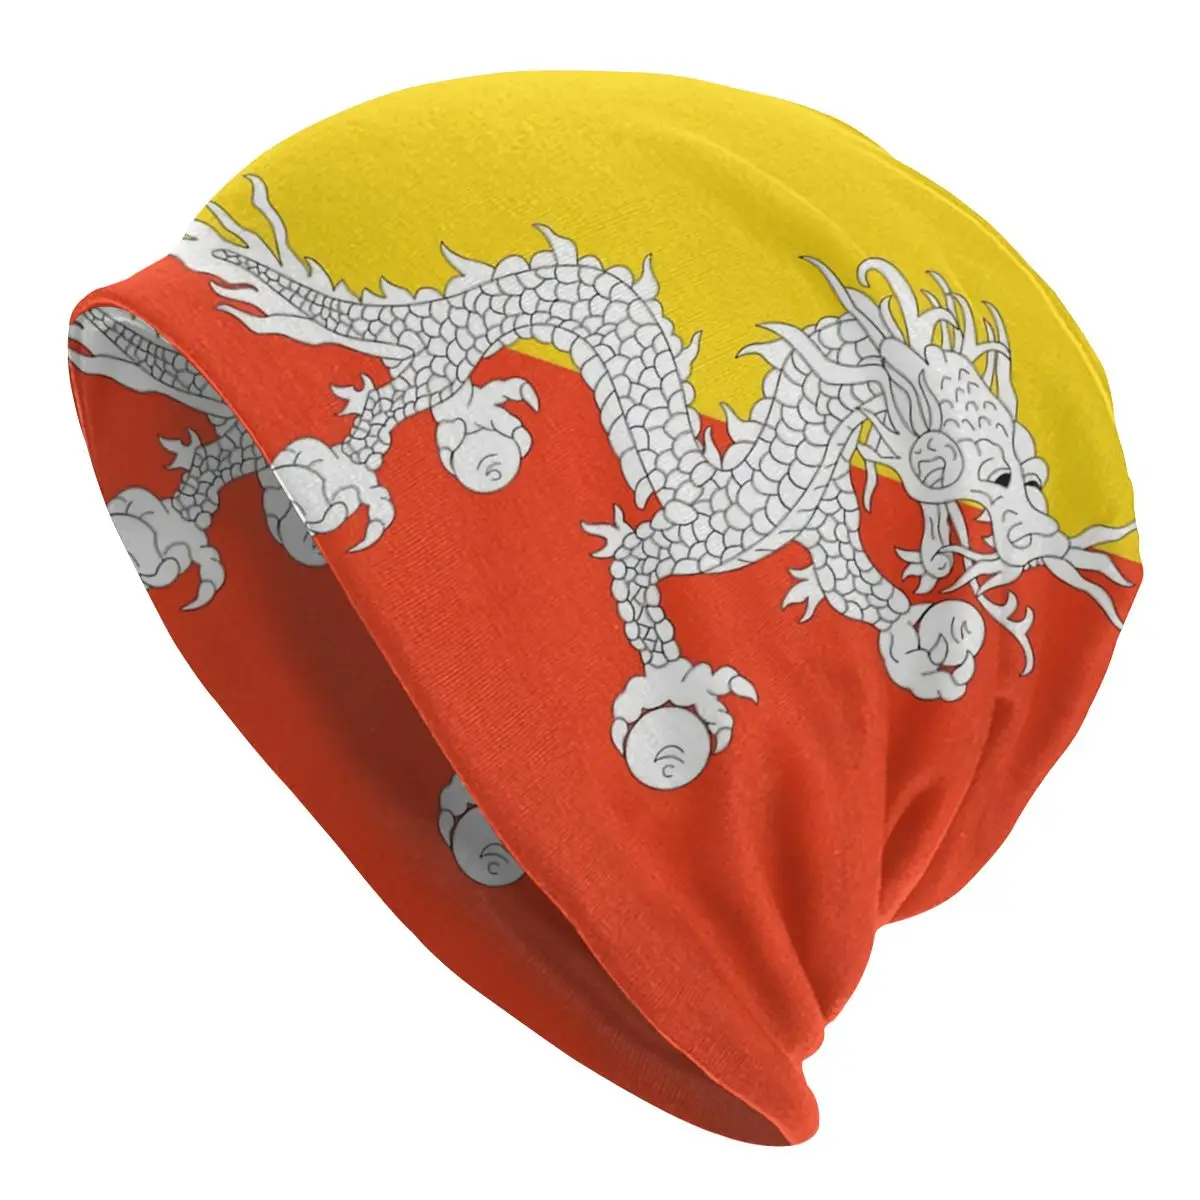 Homens adultos do Chapéu de Malha de Butão Bandeira Bonnet Chapéus de sol, chapéu R333 Novidade Unisex Skullies Beanies Caps